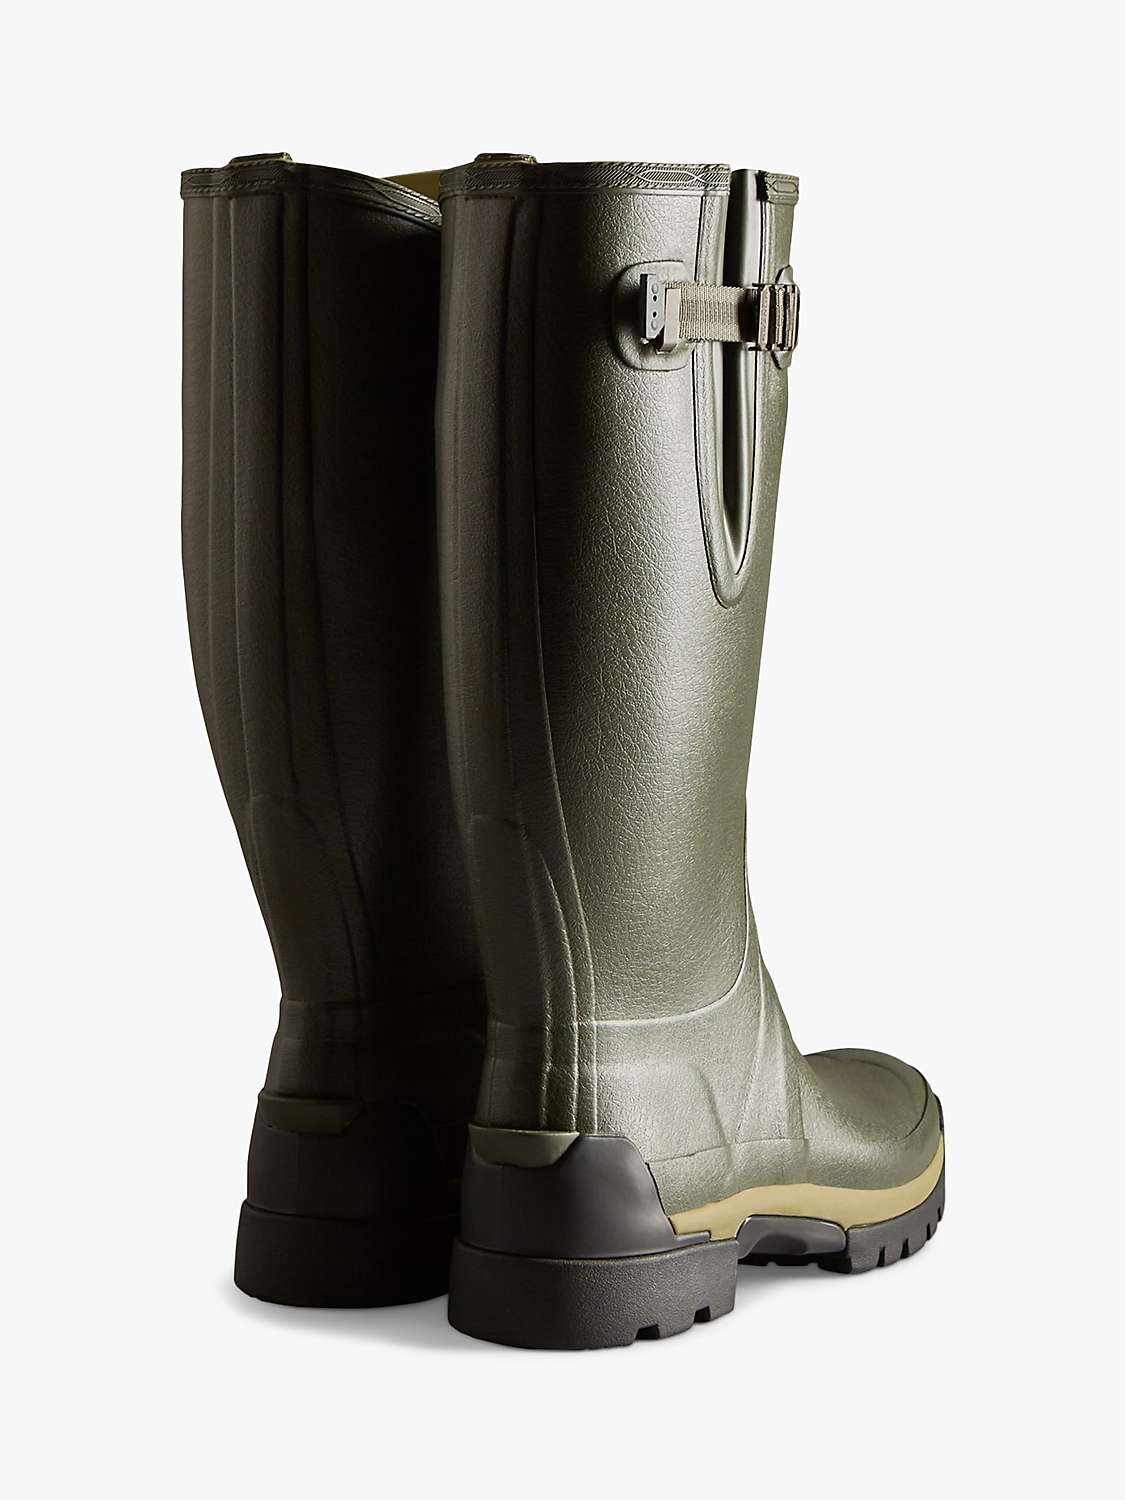 Buy Hunter Men's Balmoral Side Adjustable Wellington Boots, Dark Olive Online at johnlewis.com